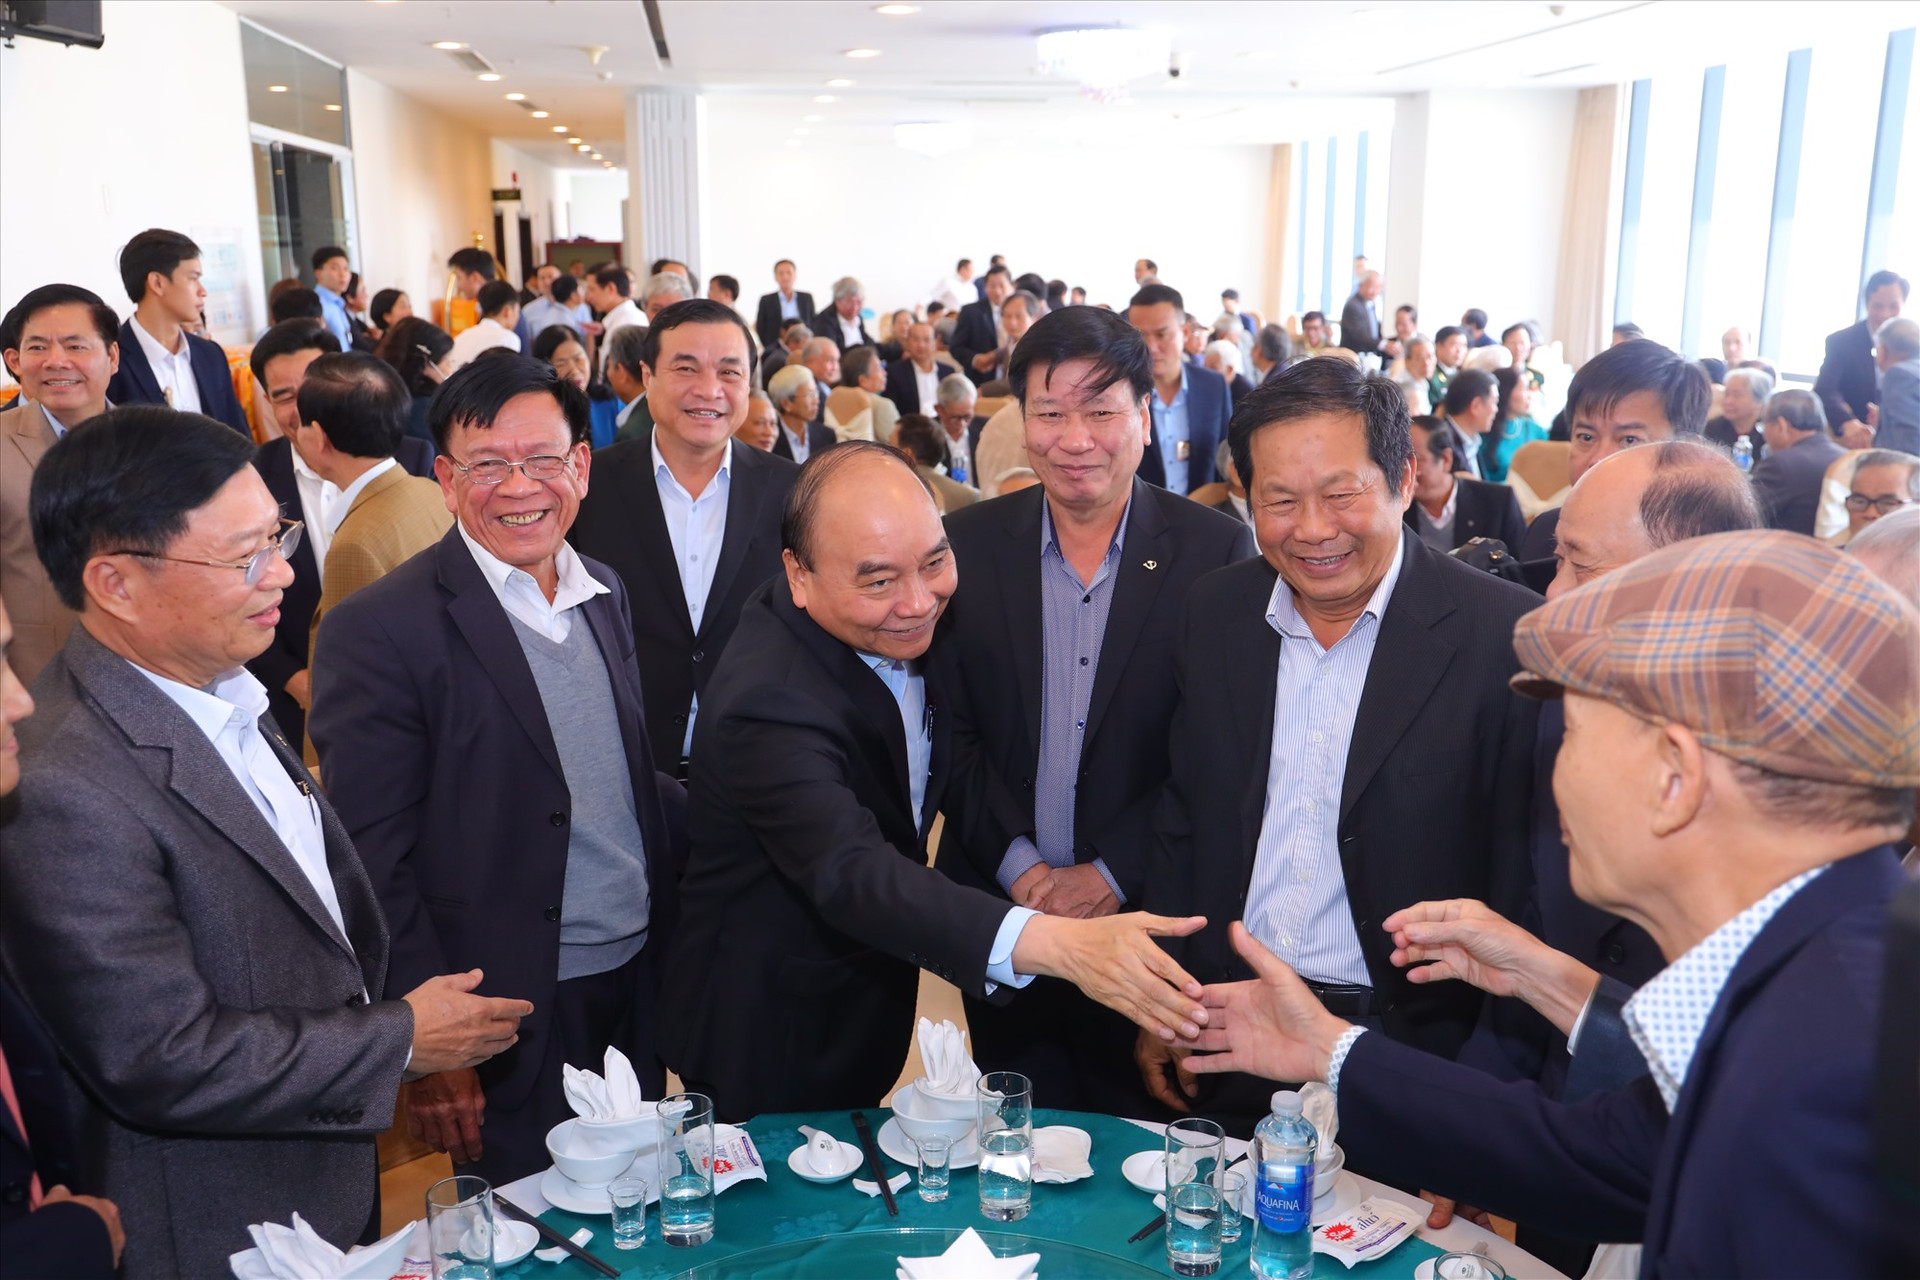 Chủ tịch nước ân tại buổi gặp mặt các đồng chí nguyên lãnh đạo tỉnh, sở, ban, ngành và tương đương từ Đà Nẵng vào công tác tại Quảng Nam ngay từ ngày đầu tái lập tỉnh nay đã nghỉ hưu